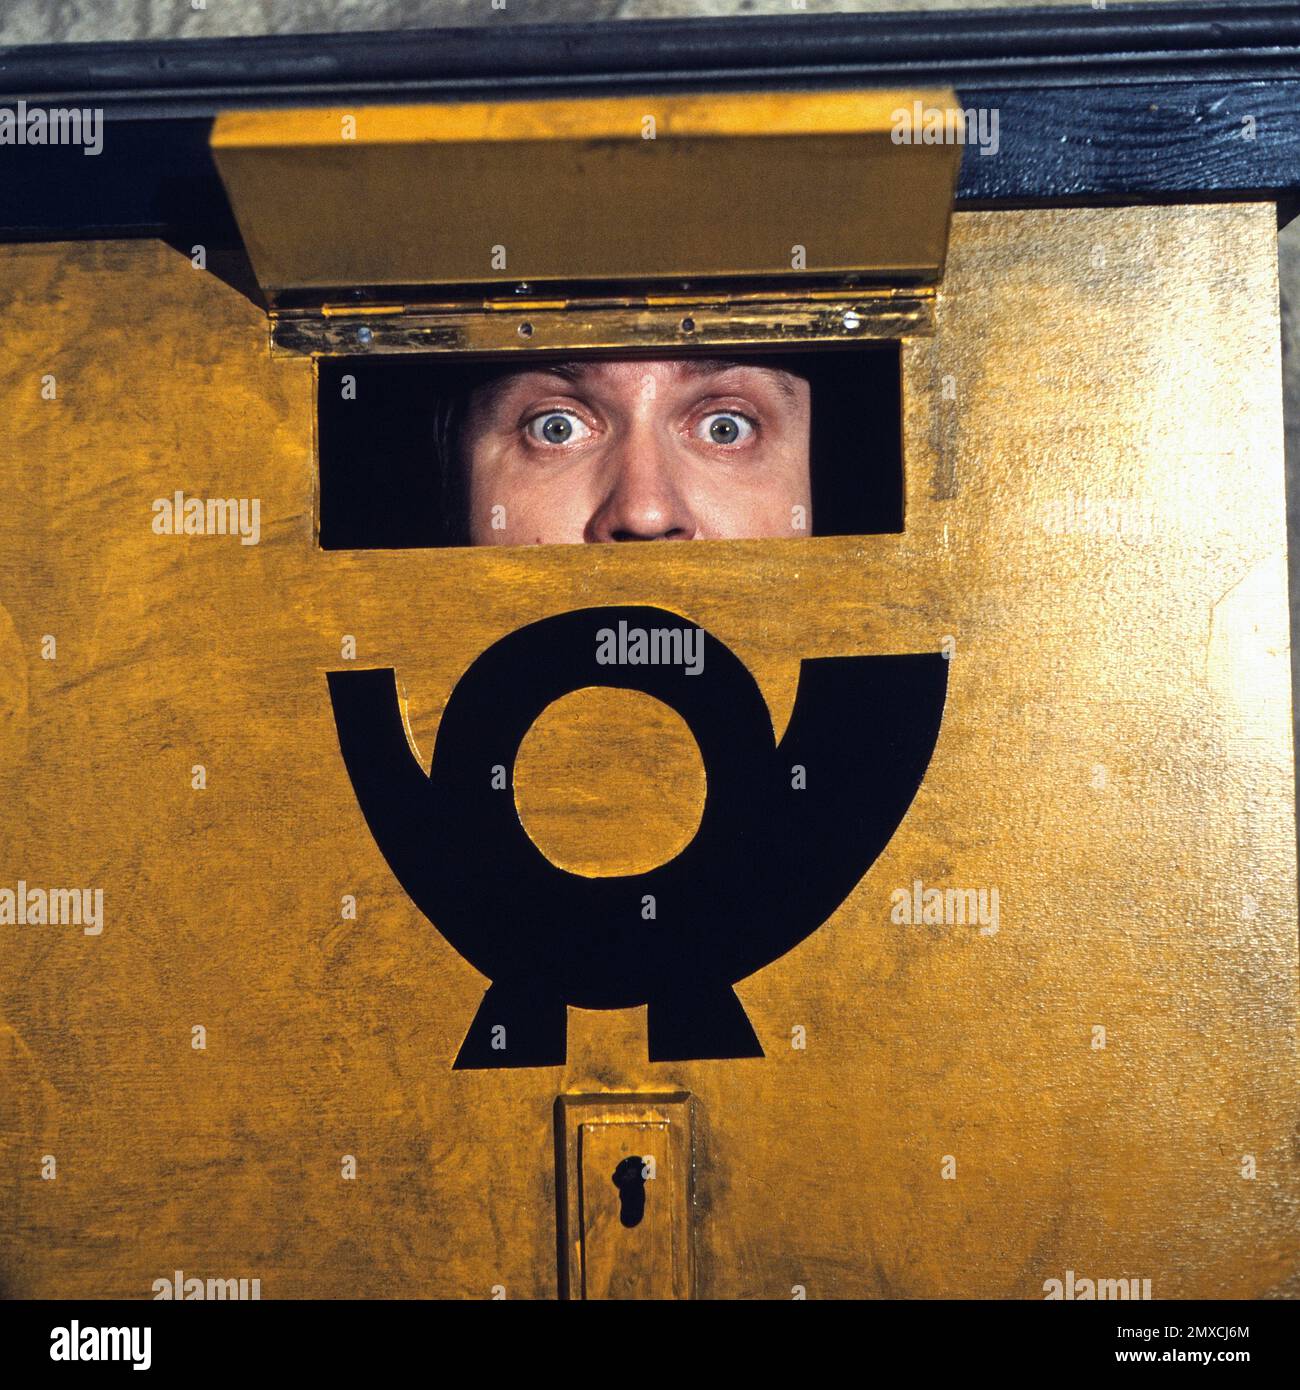 Spielwiese, Experimentelle Sendereihe, Deutschland 1979 - 1986, Regie: Helmut Rest, Mitwirkende: Wahrscheinlich Wolfgang Güttler im Briefkasten Banque D'Images